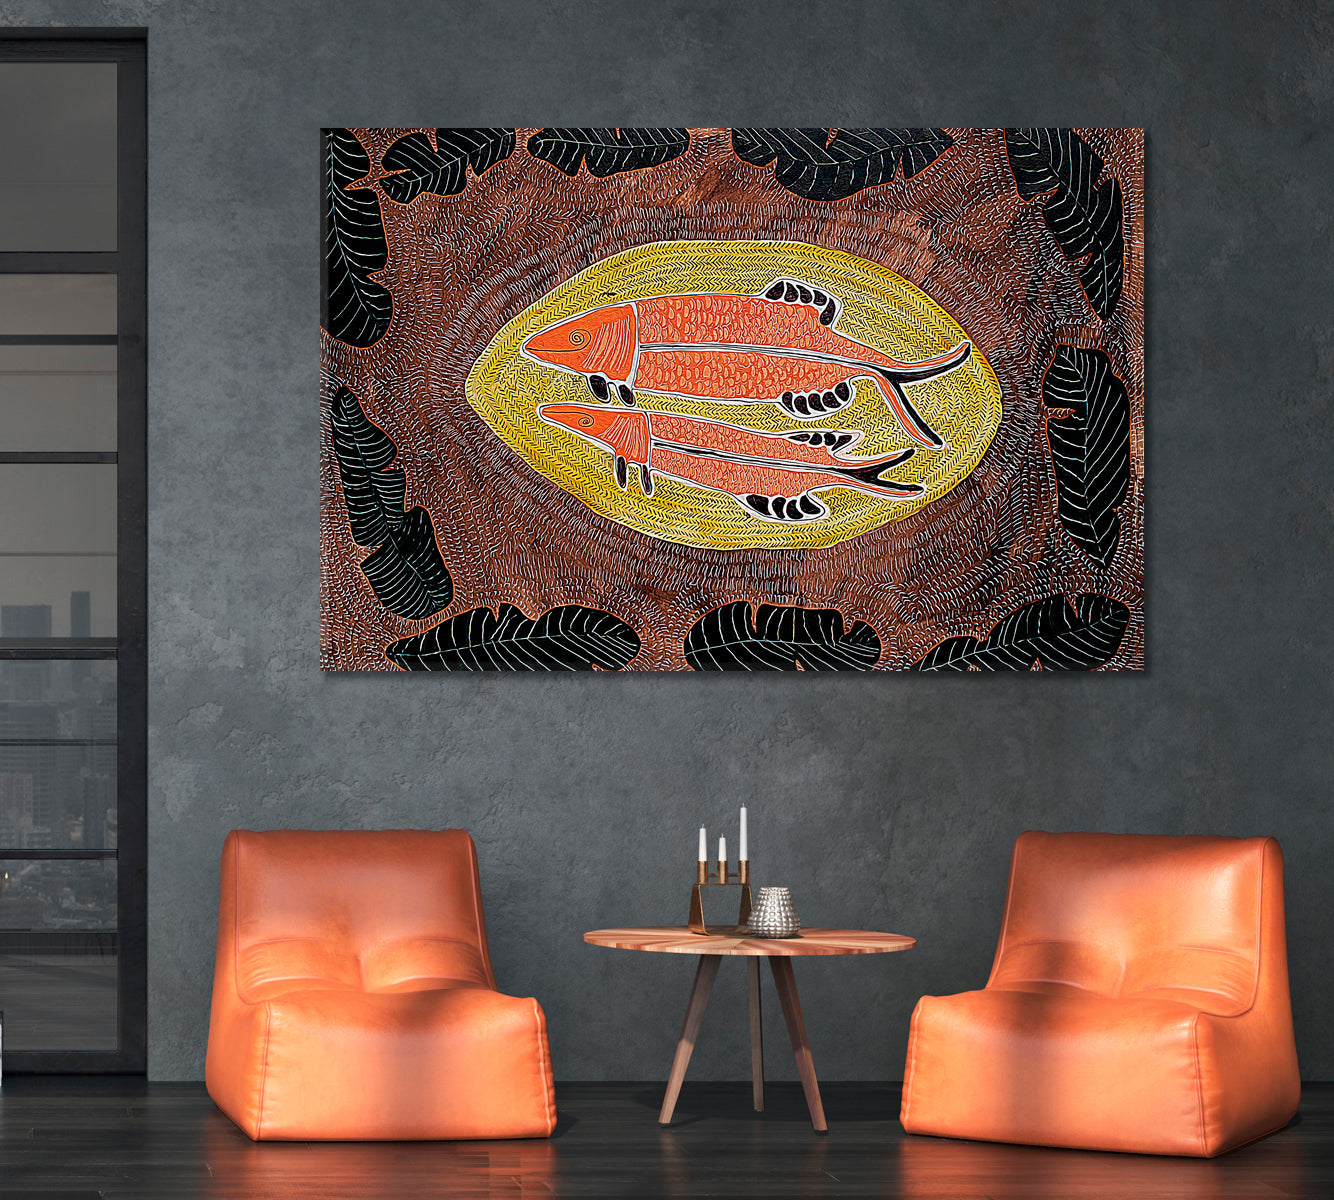 ARTIST'S MASTERPIECE Fish Abstract Modern Boho African Motifs Pattern Contemporary Art Artesty   